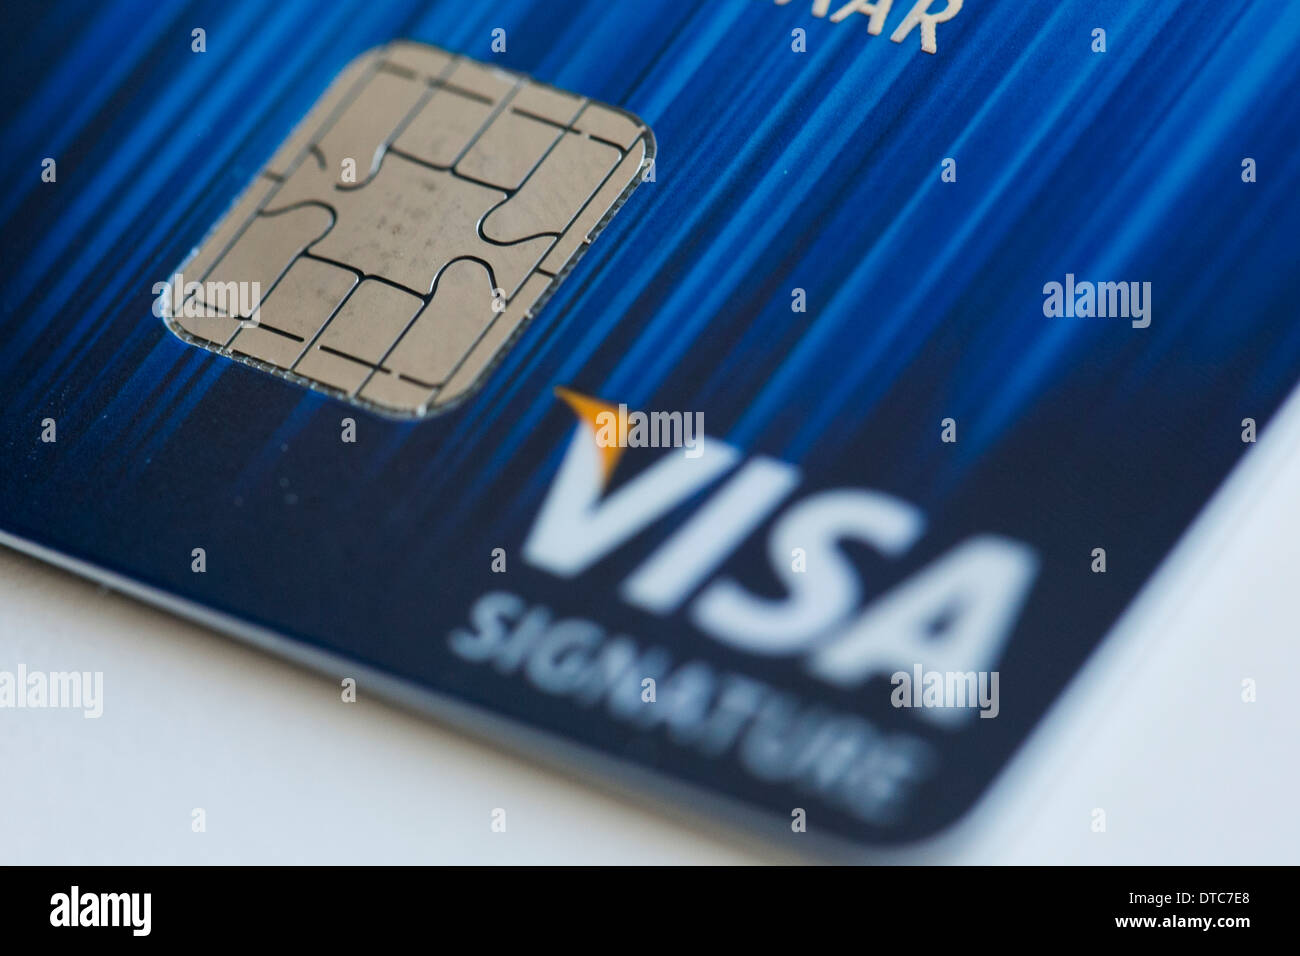 Eine Visa-Kreditkarte mit EMV-Chip, nebeneinander auch bekannt als "Chip und PIN" mit einem Magnetstreifen-Karte. Stockfoto